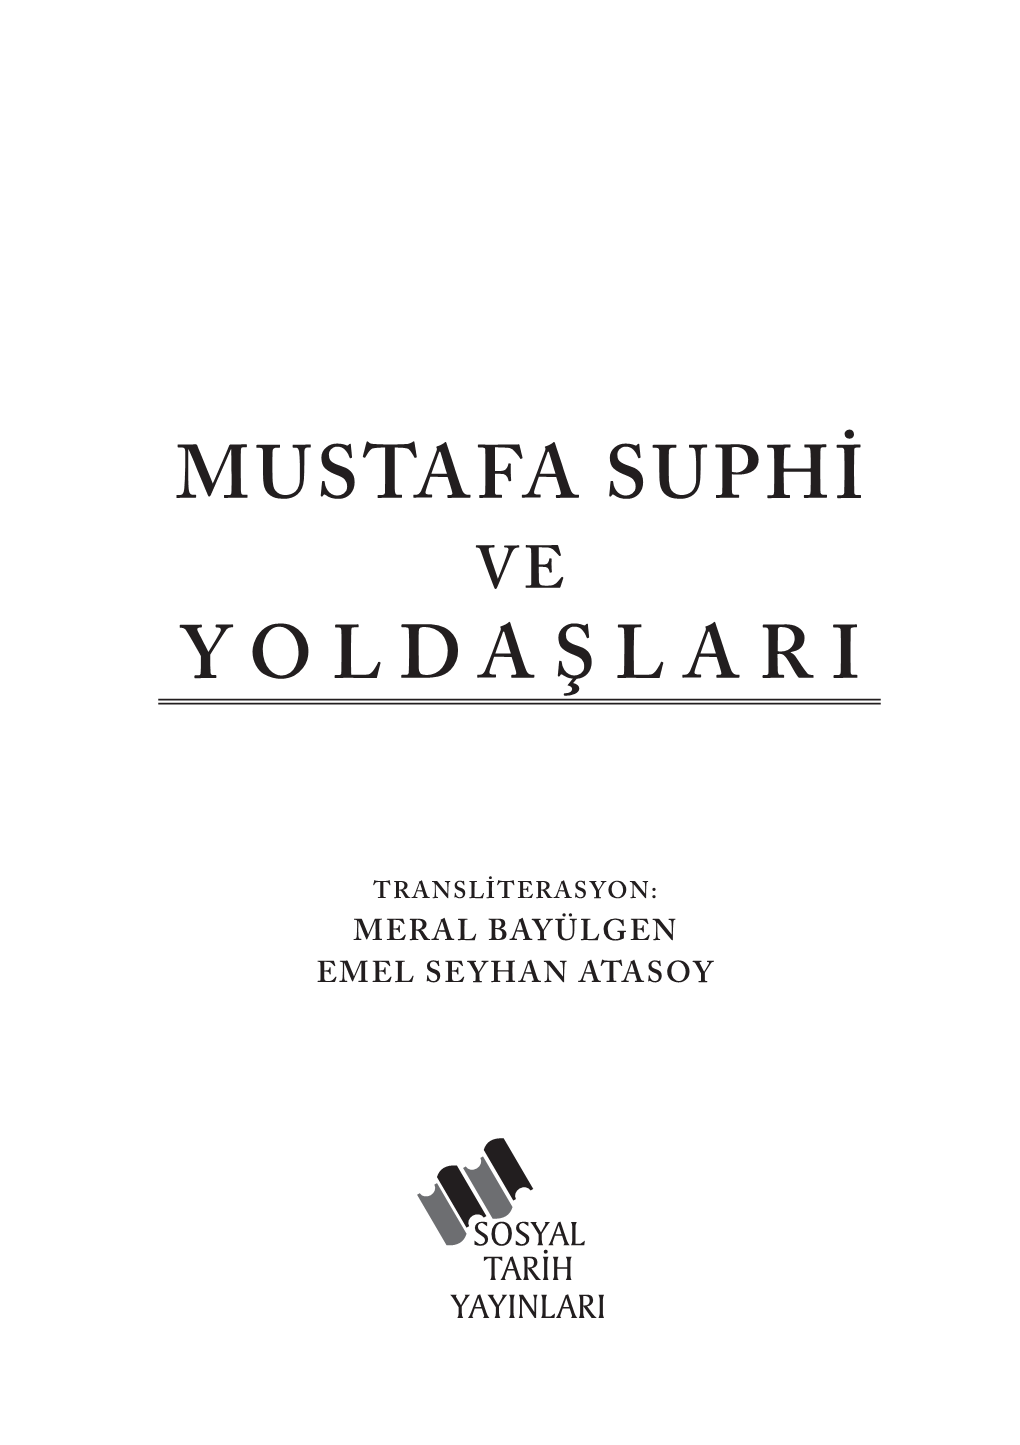 Mustafa Suphi Yoldaşlari